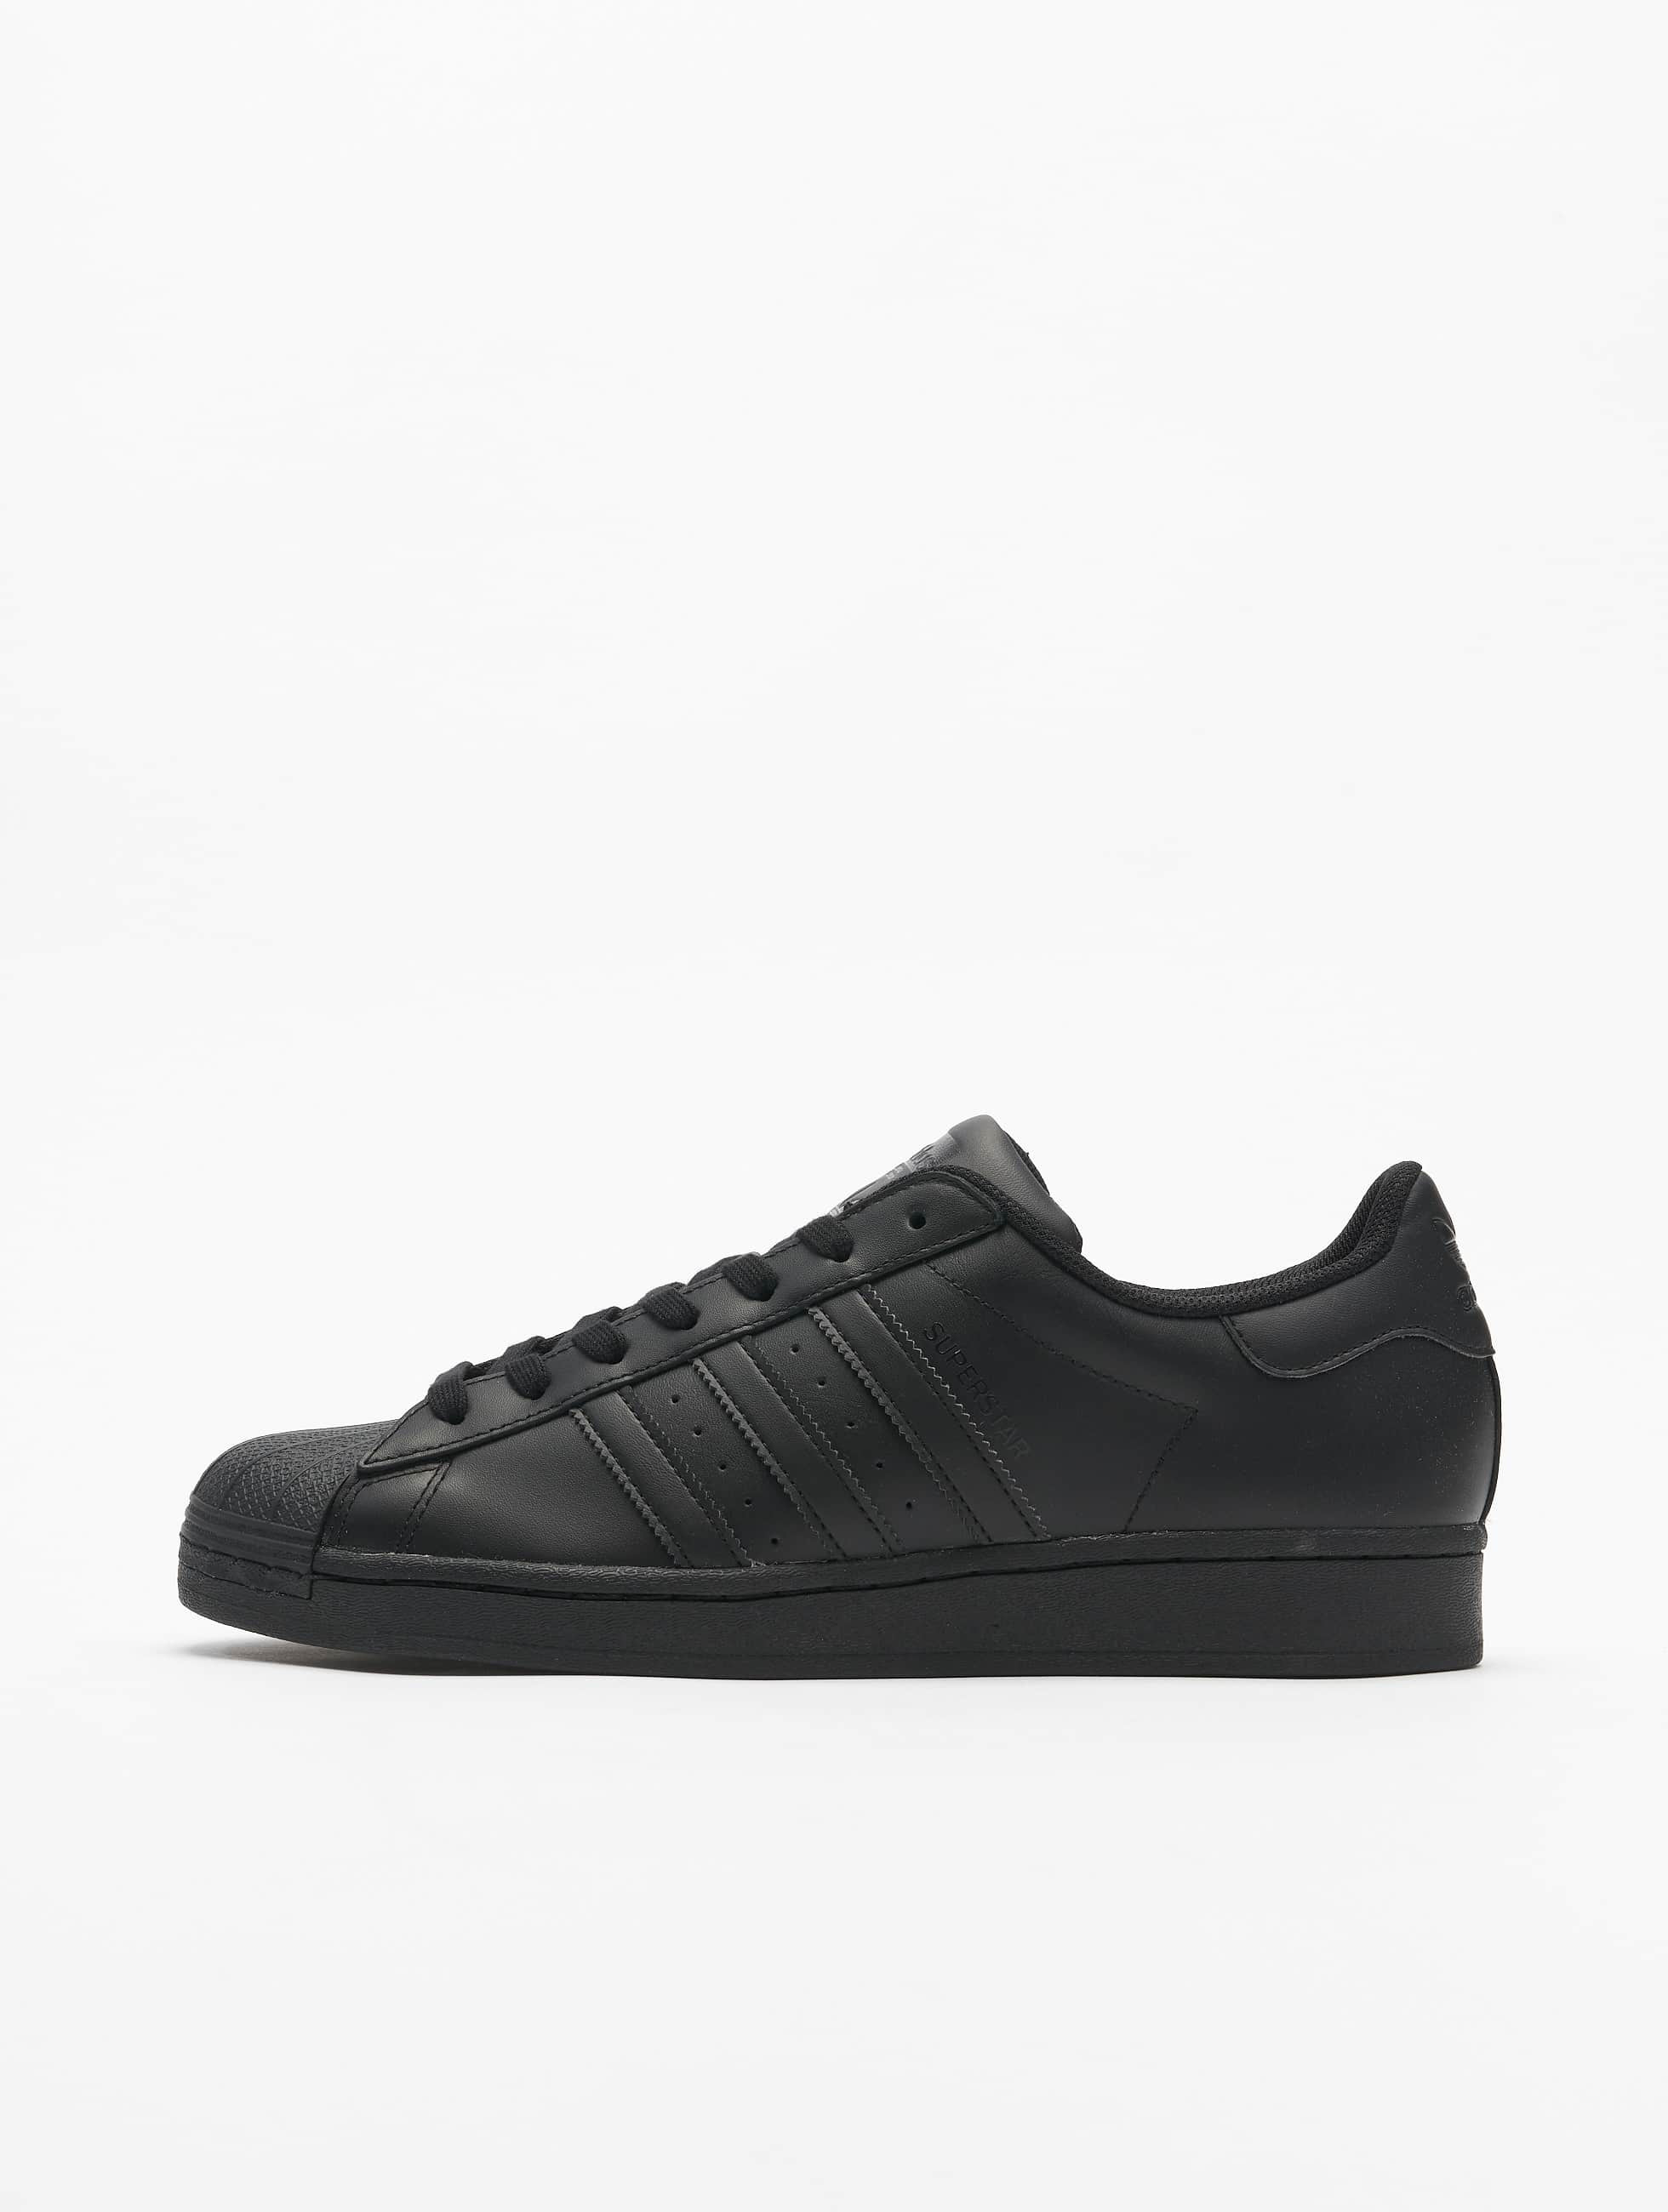 Invloed Wat is er mis silhouet adidas Originals schoen / sneaker Superstar in zwart 788127